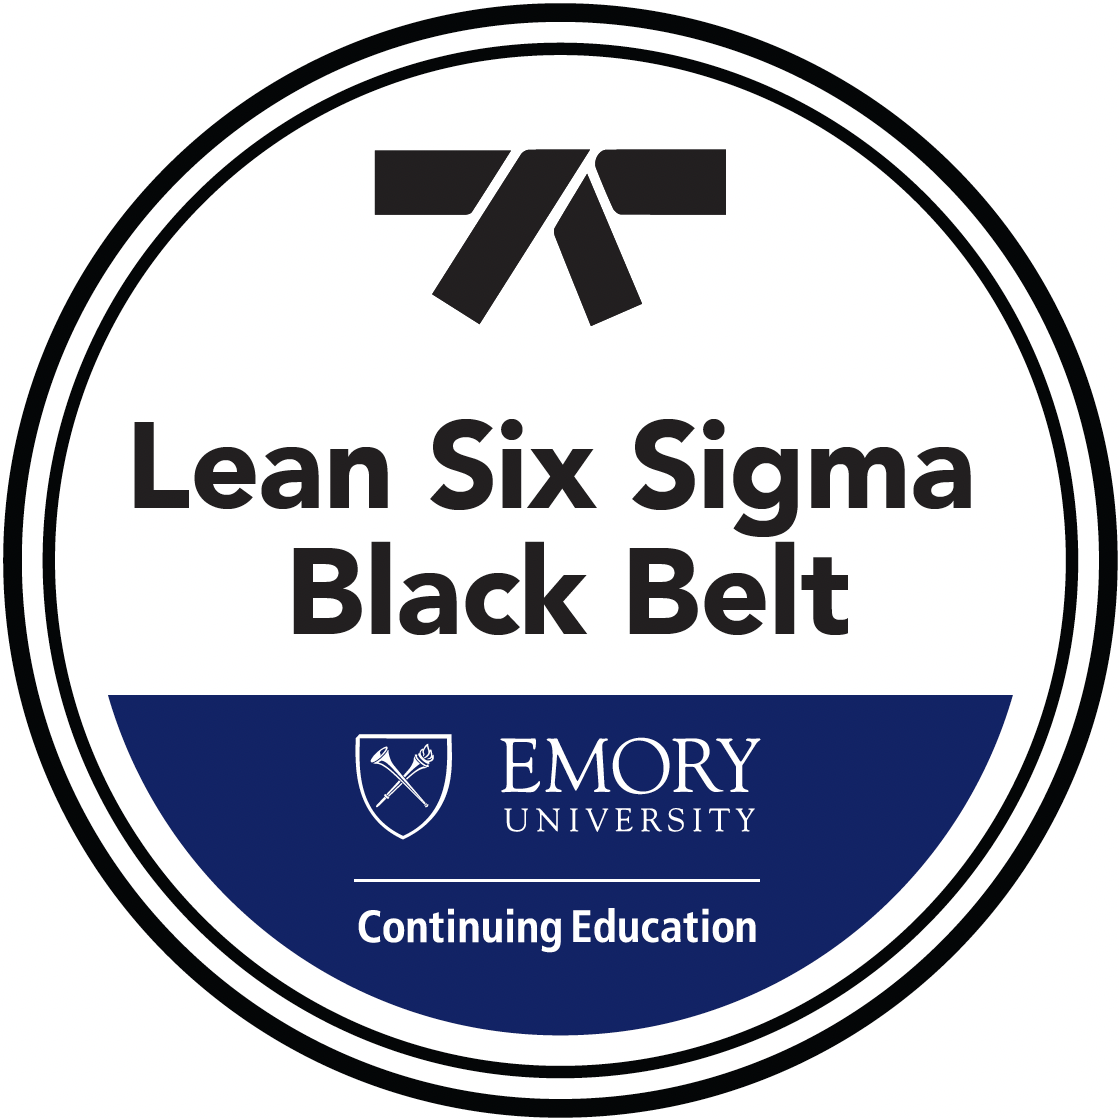 Black belt badge